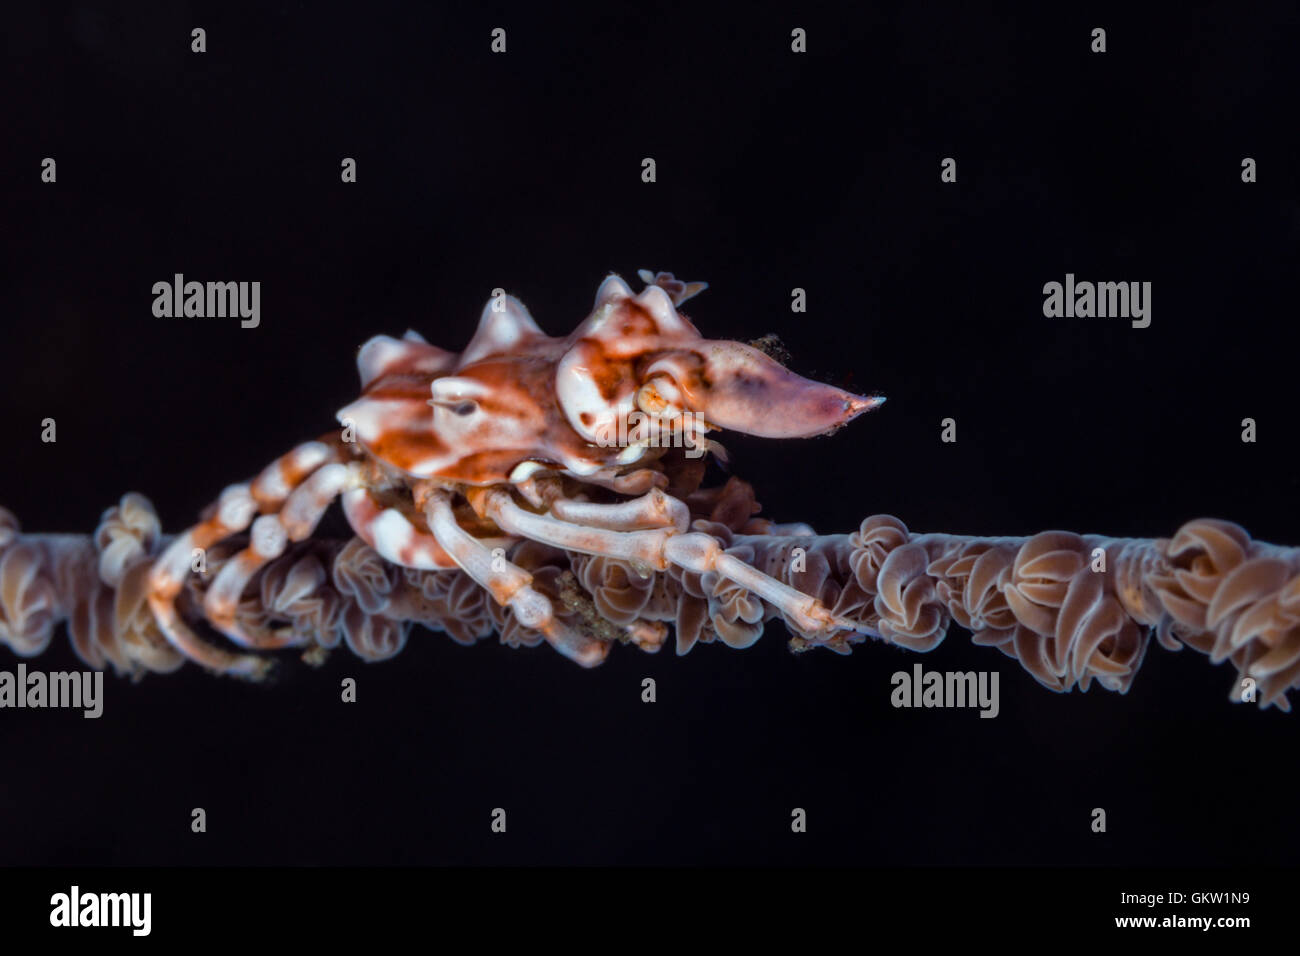 Araignée de mer de Corail fil, Xenocarcinus tuberculatus, Bali, Indonésie Banque D'Images